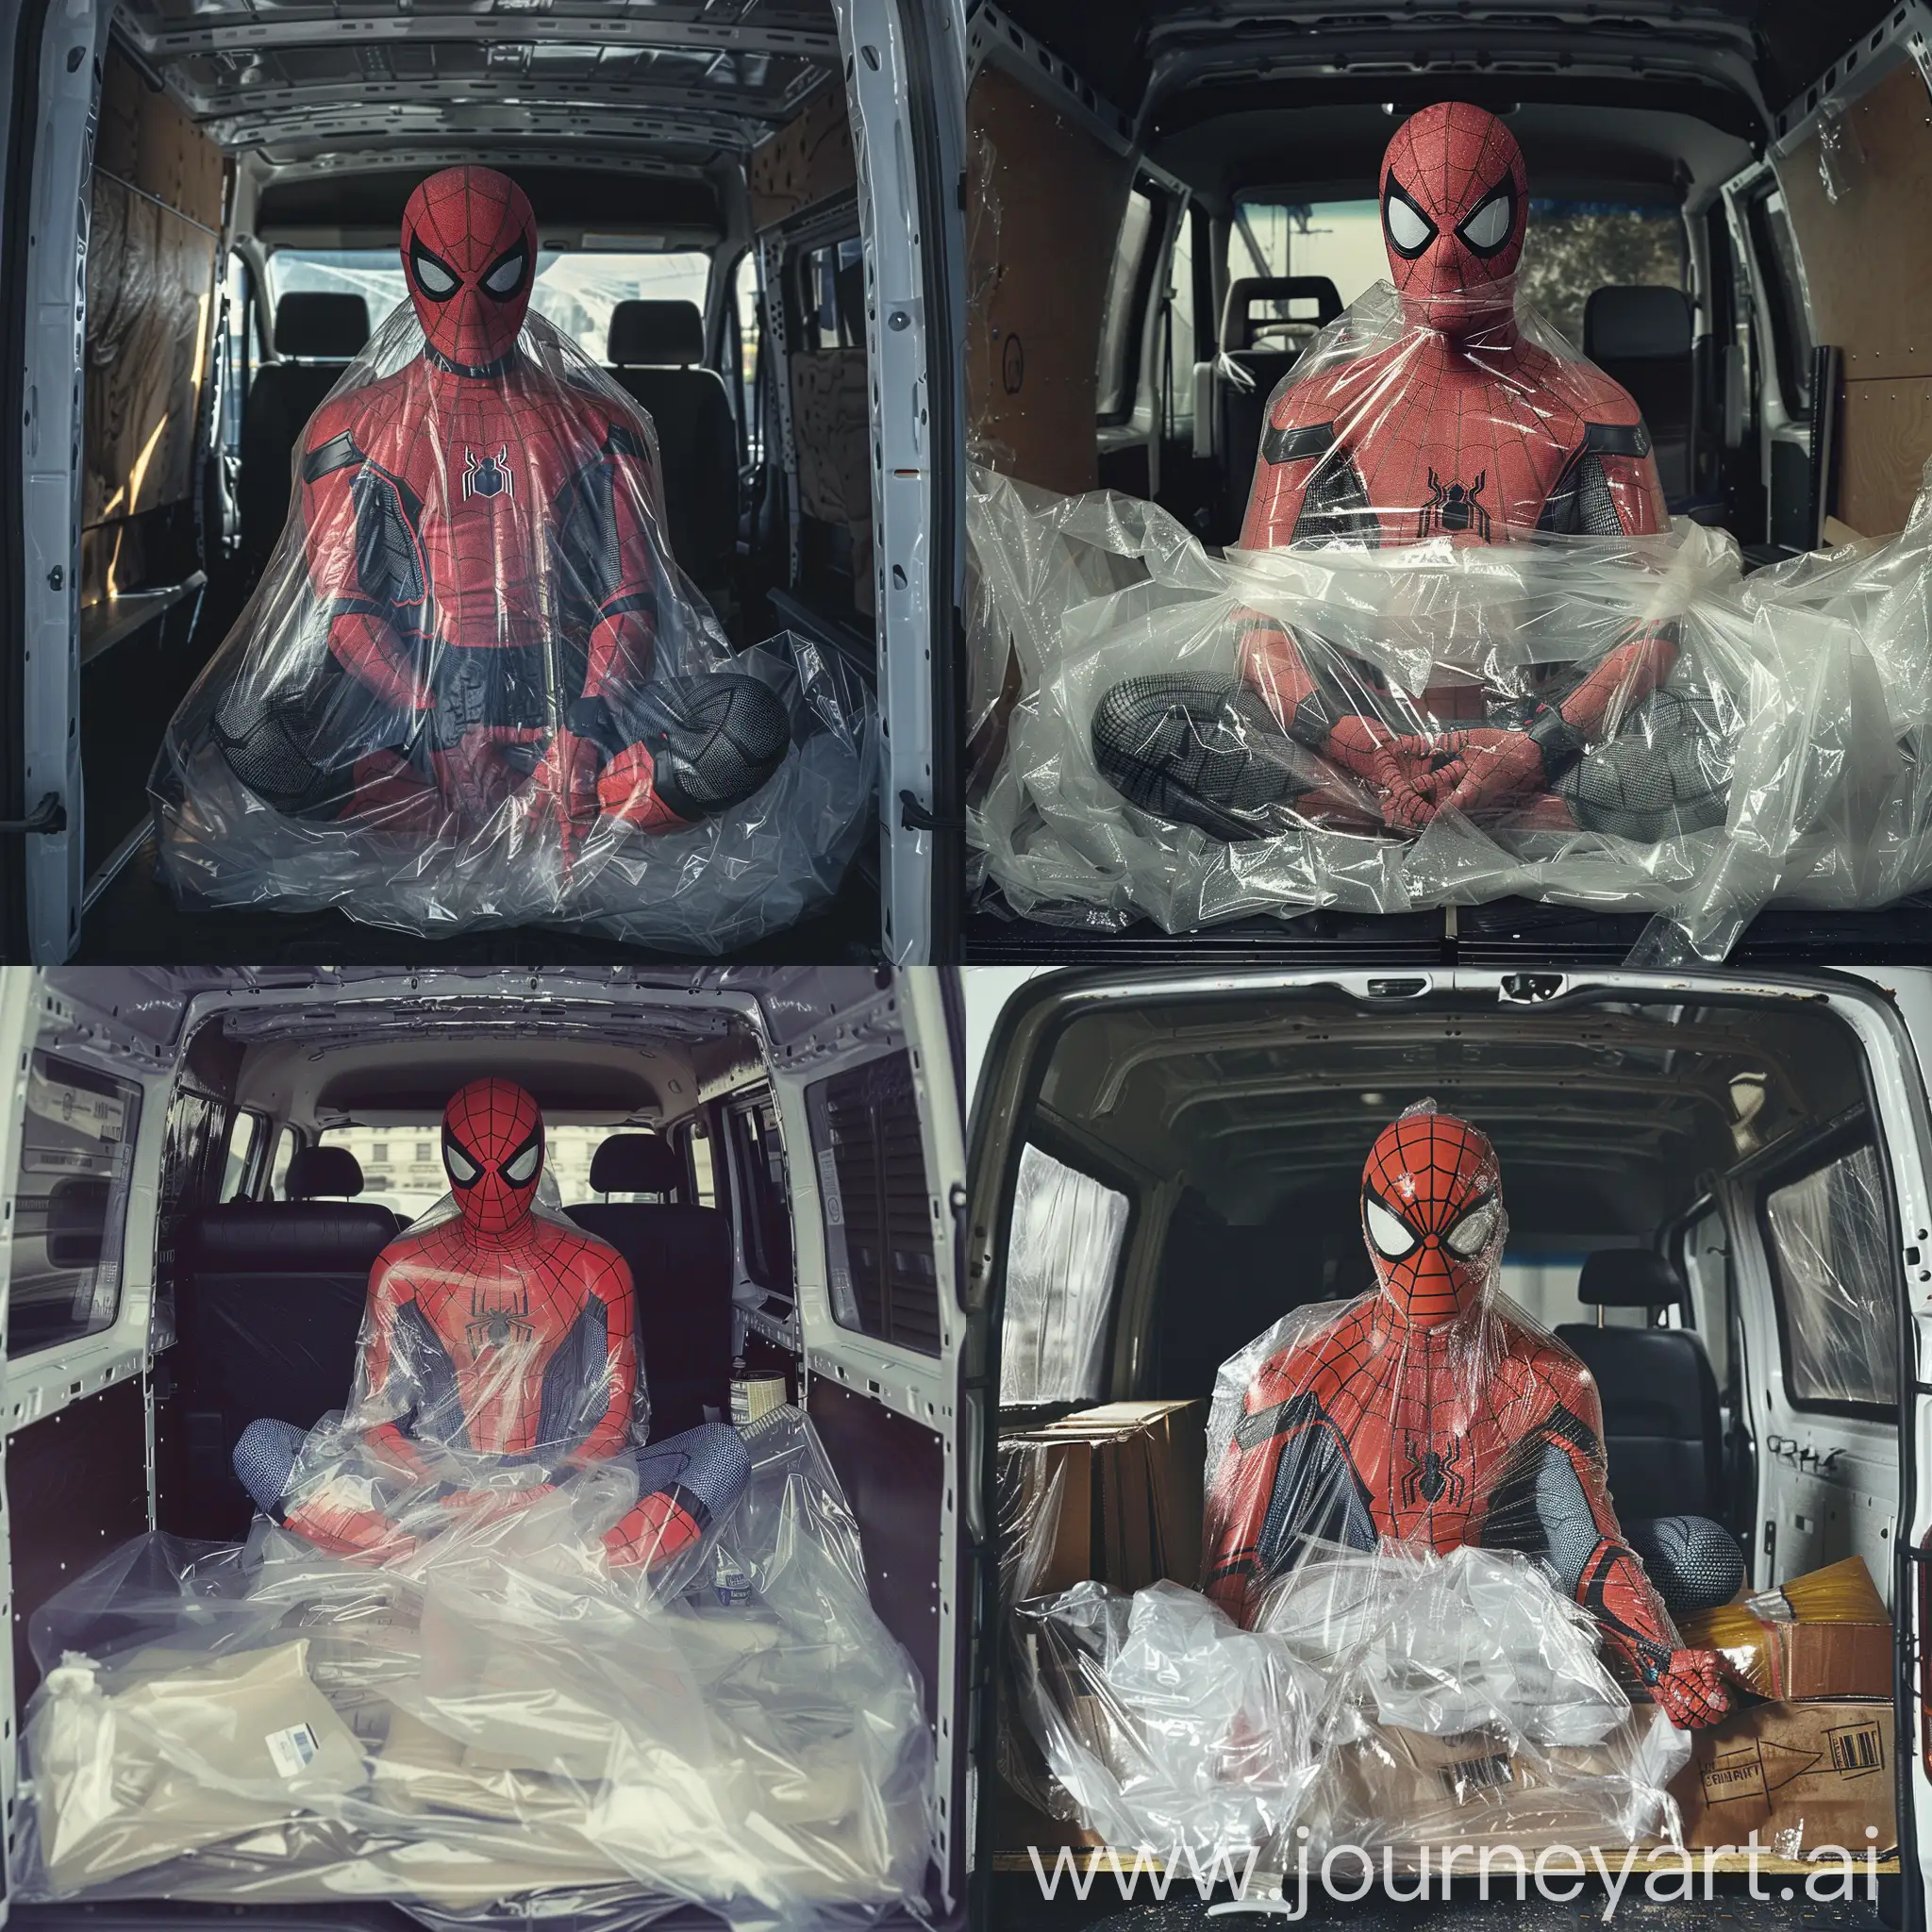 Spiderman-Captured-in-Plastic-Dramatic-Van-Scene